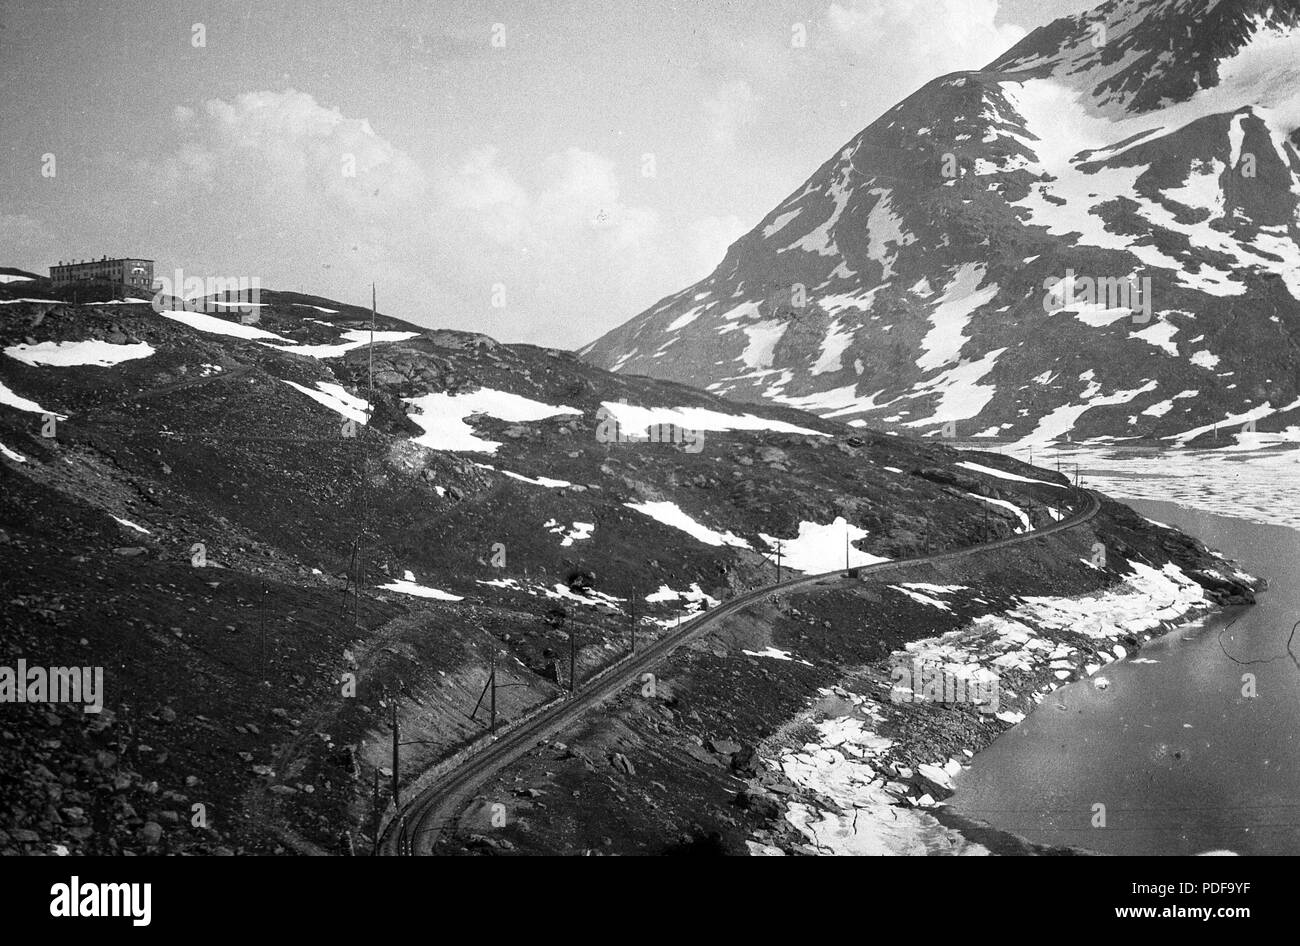 78 Bernina-hágó a hasonló nevű magashegyi vendégfogadóval és vasúttal. Jobbra a Lago Bianco mesterséges tó. Fortepan 52880 Stock Photo